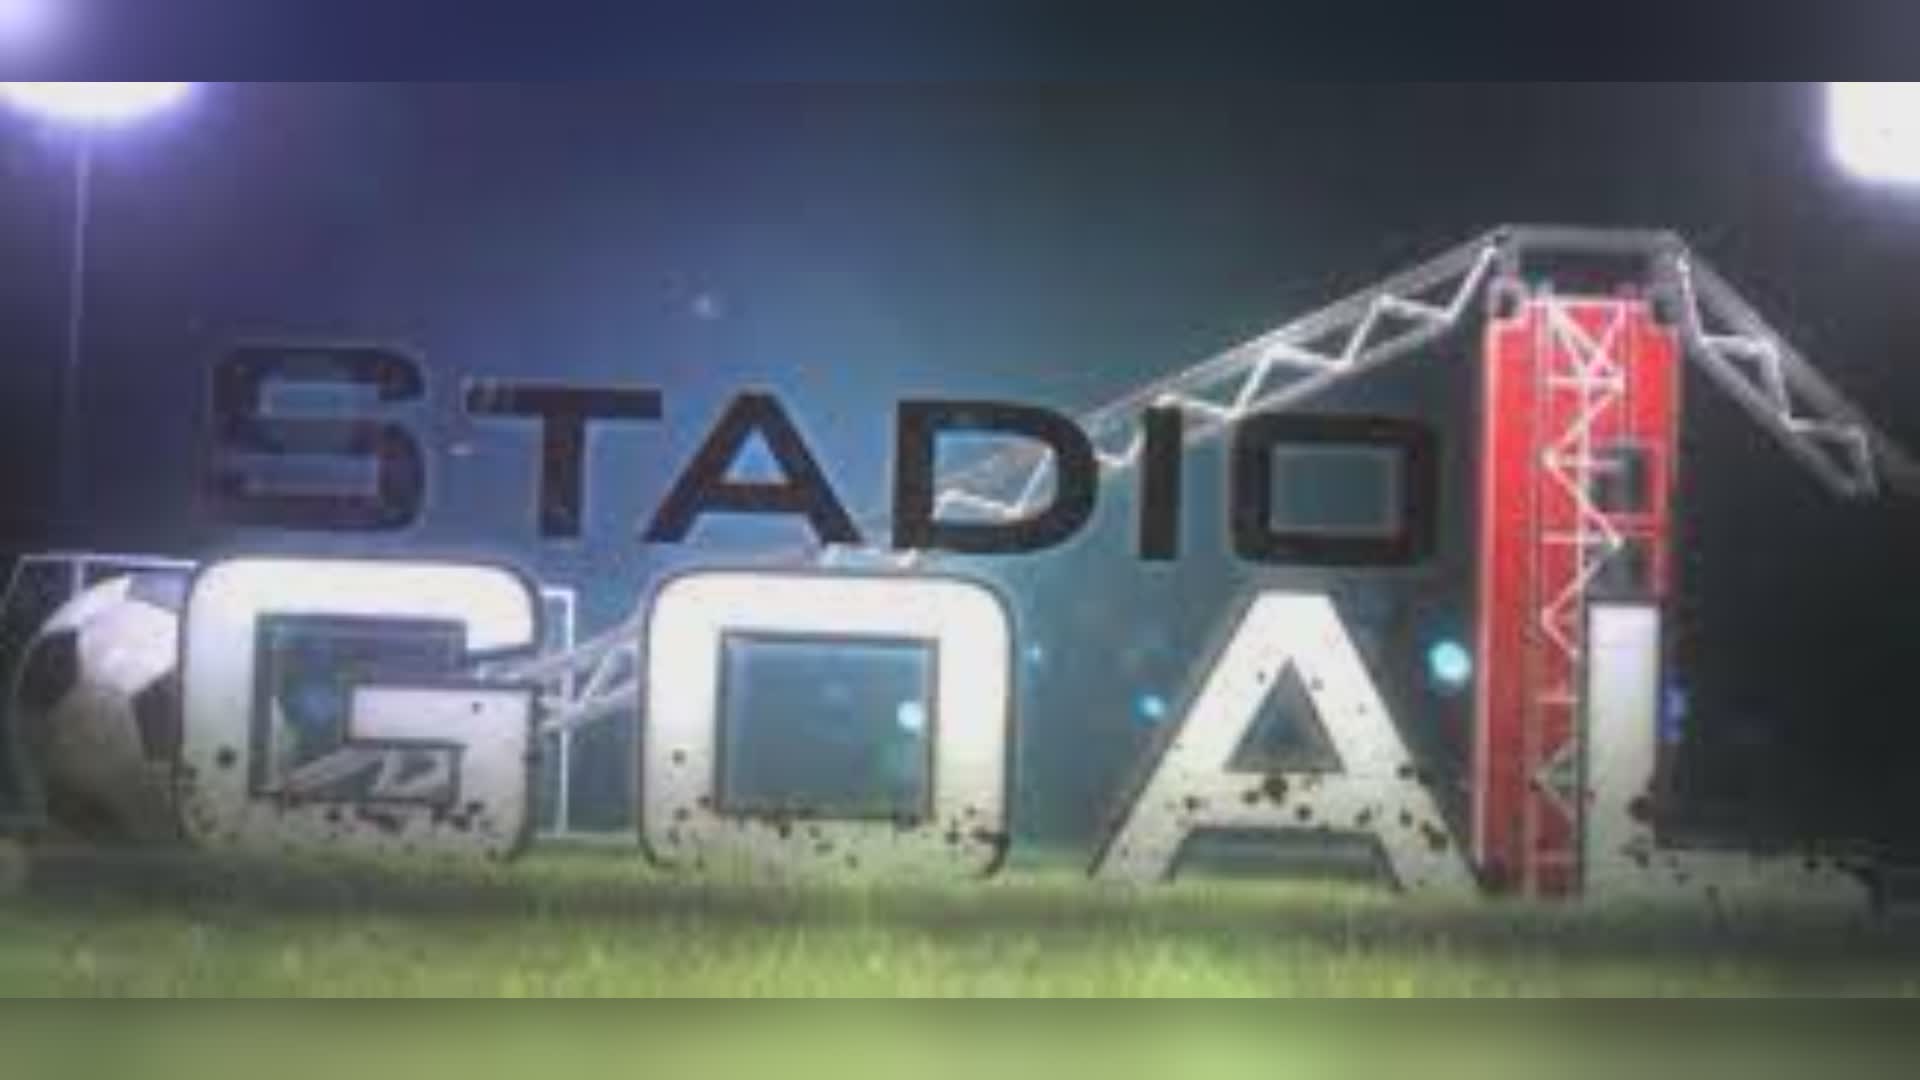 Genoa, stasera dalle 20,15 Stadio Goal su Telenord per seguire la partita di Lecce